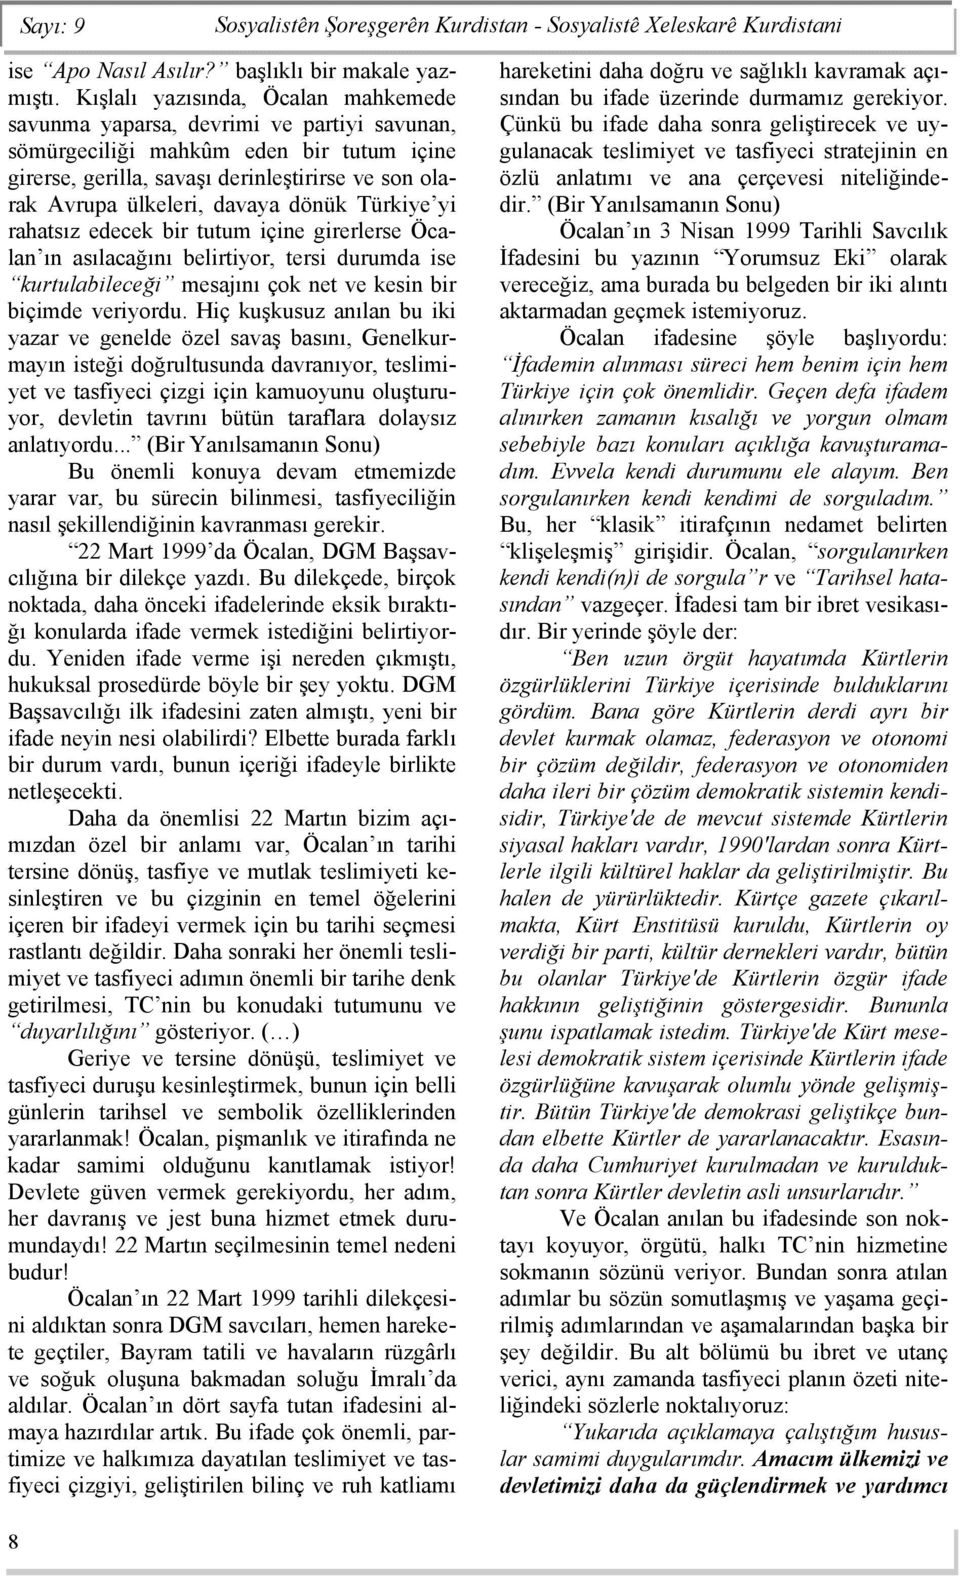 davaya dönük Türkiye yi rahatsız edecek bir tutum içine girerlerse Öcalan ın asılacağını belirtiyor, tersi durumda ise kurtulabileceği mesajını çok net ve kesin bir biçimde veriyordu.